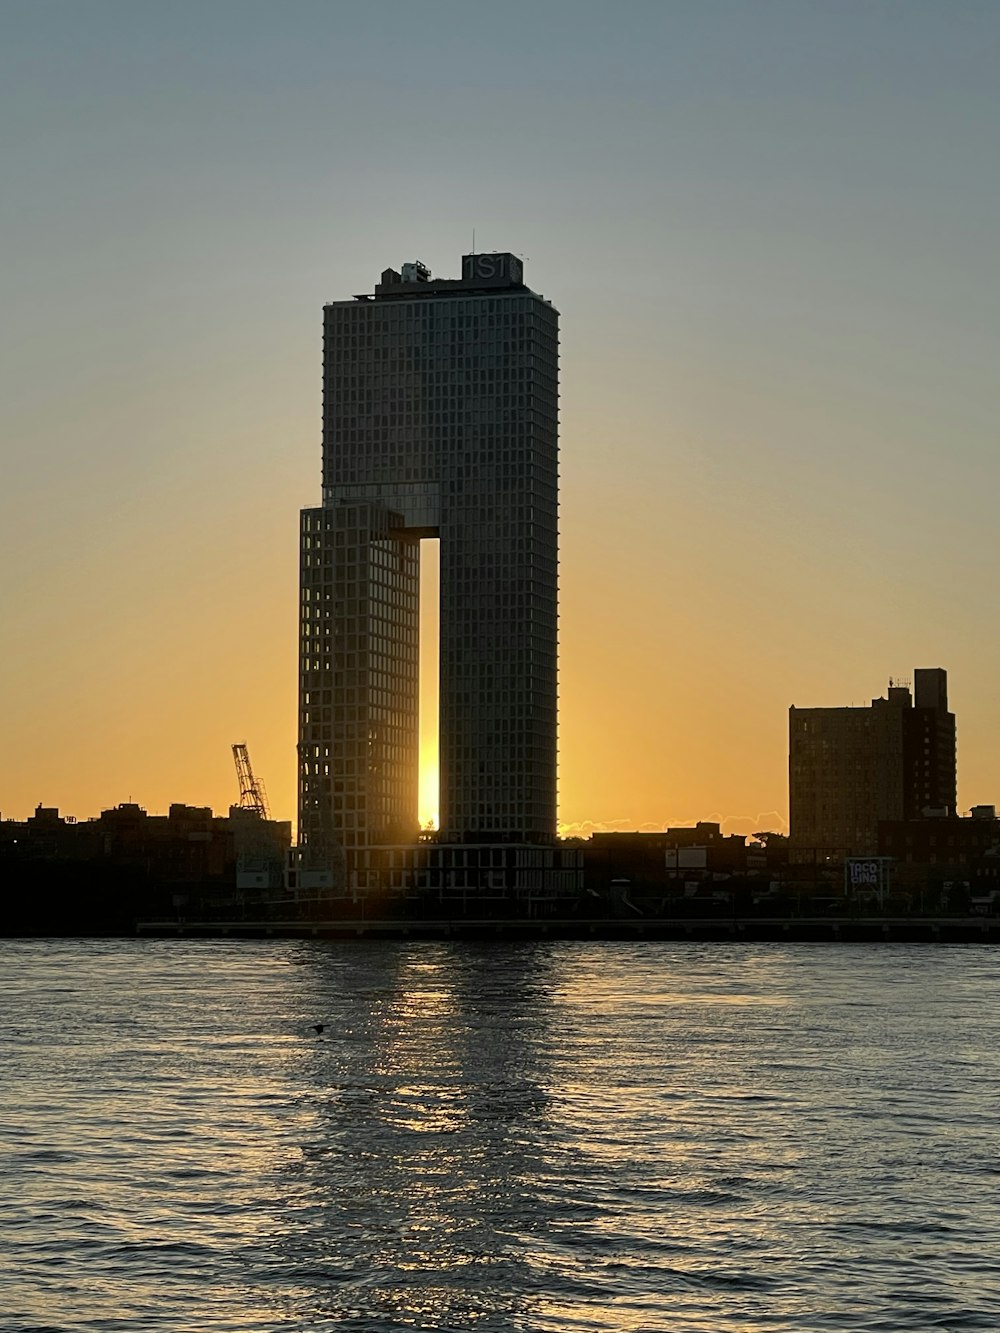 Le soleil se couche derrière un grand bâtiment